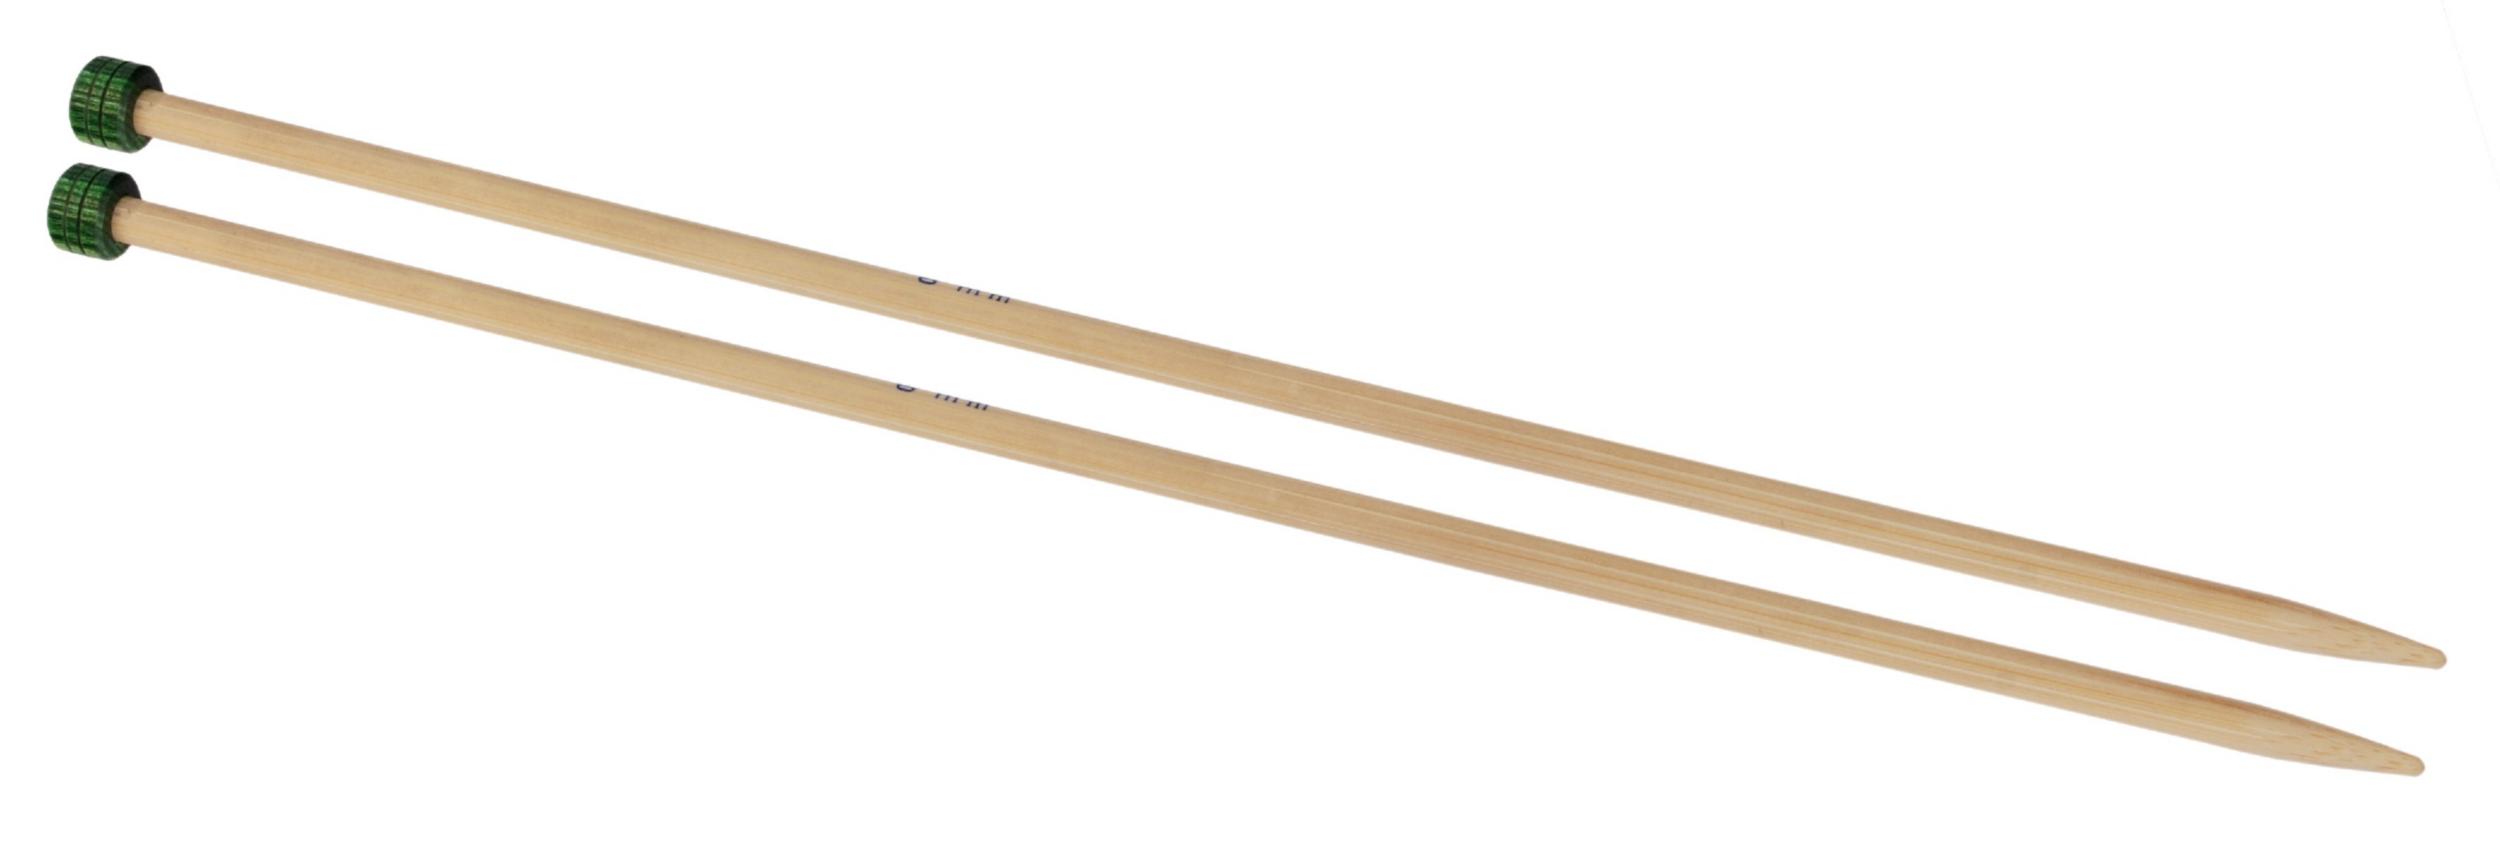 22352 Спиці прямі Bamboo KnitPro, 33 см, 2.25 мм